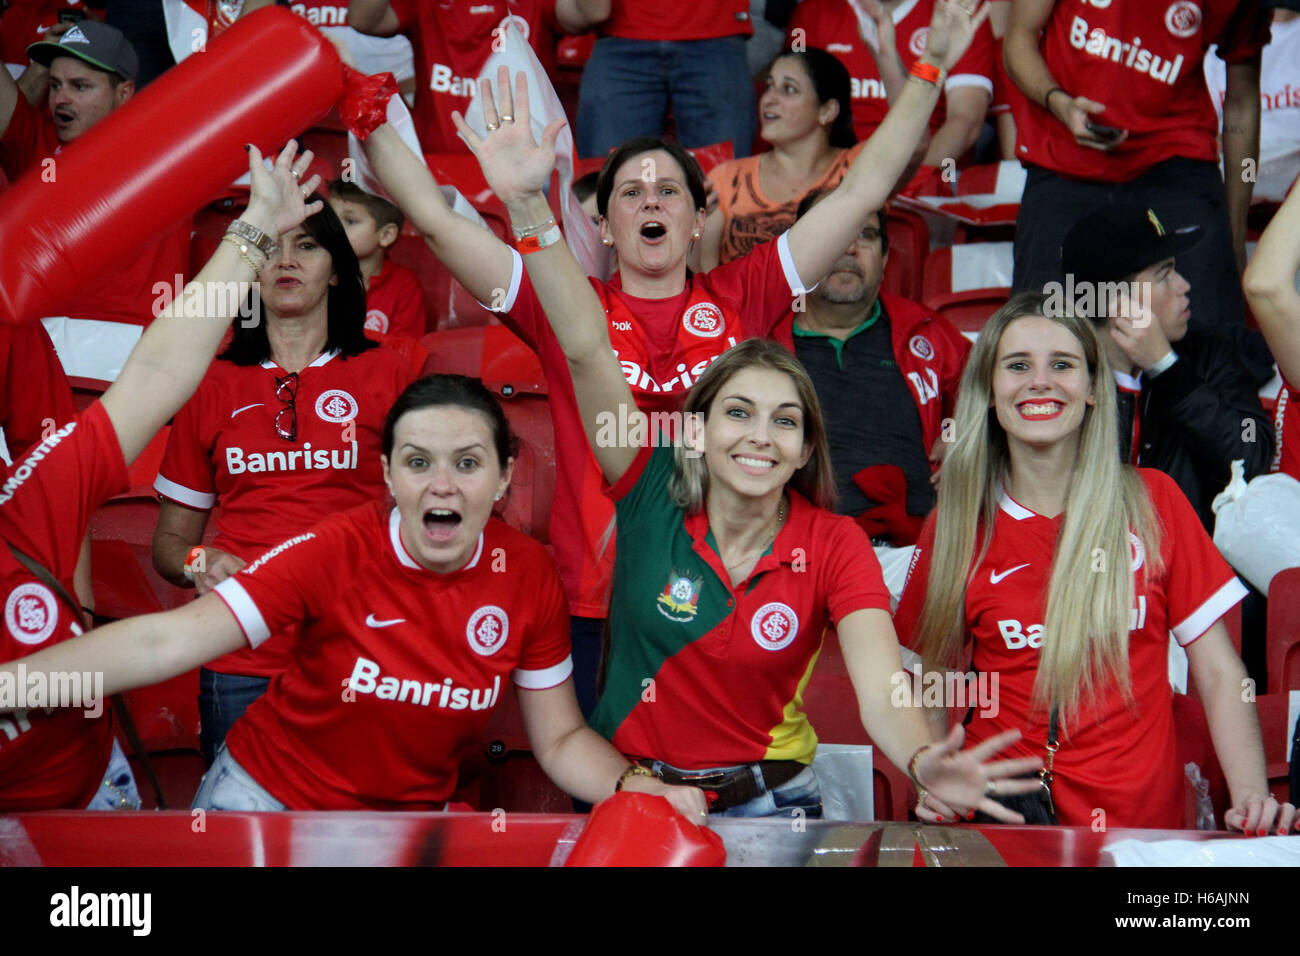 Porto Alegre, Brazil. 26th Oct, 2016. Rio Stadium, Porto Alegre/RS. Credit:  Eldio Suzano/FotoArena/Alamy Live News Stock Photo